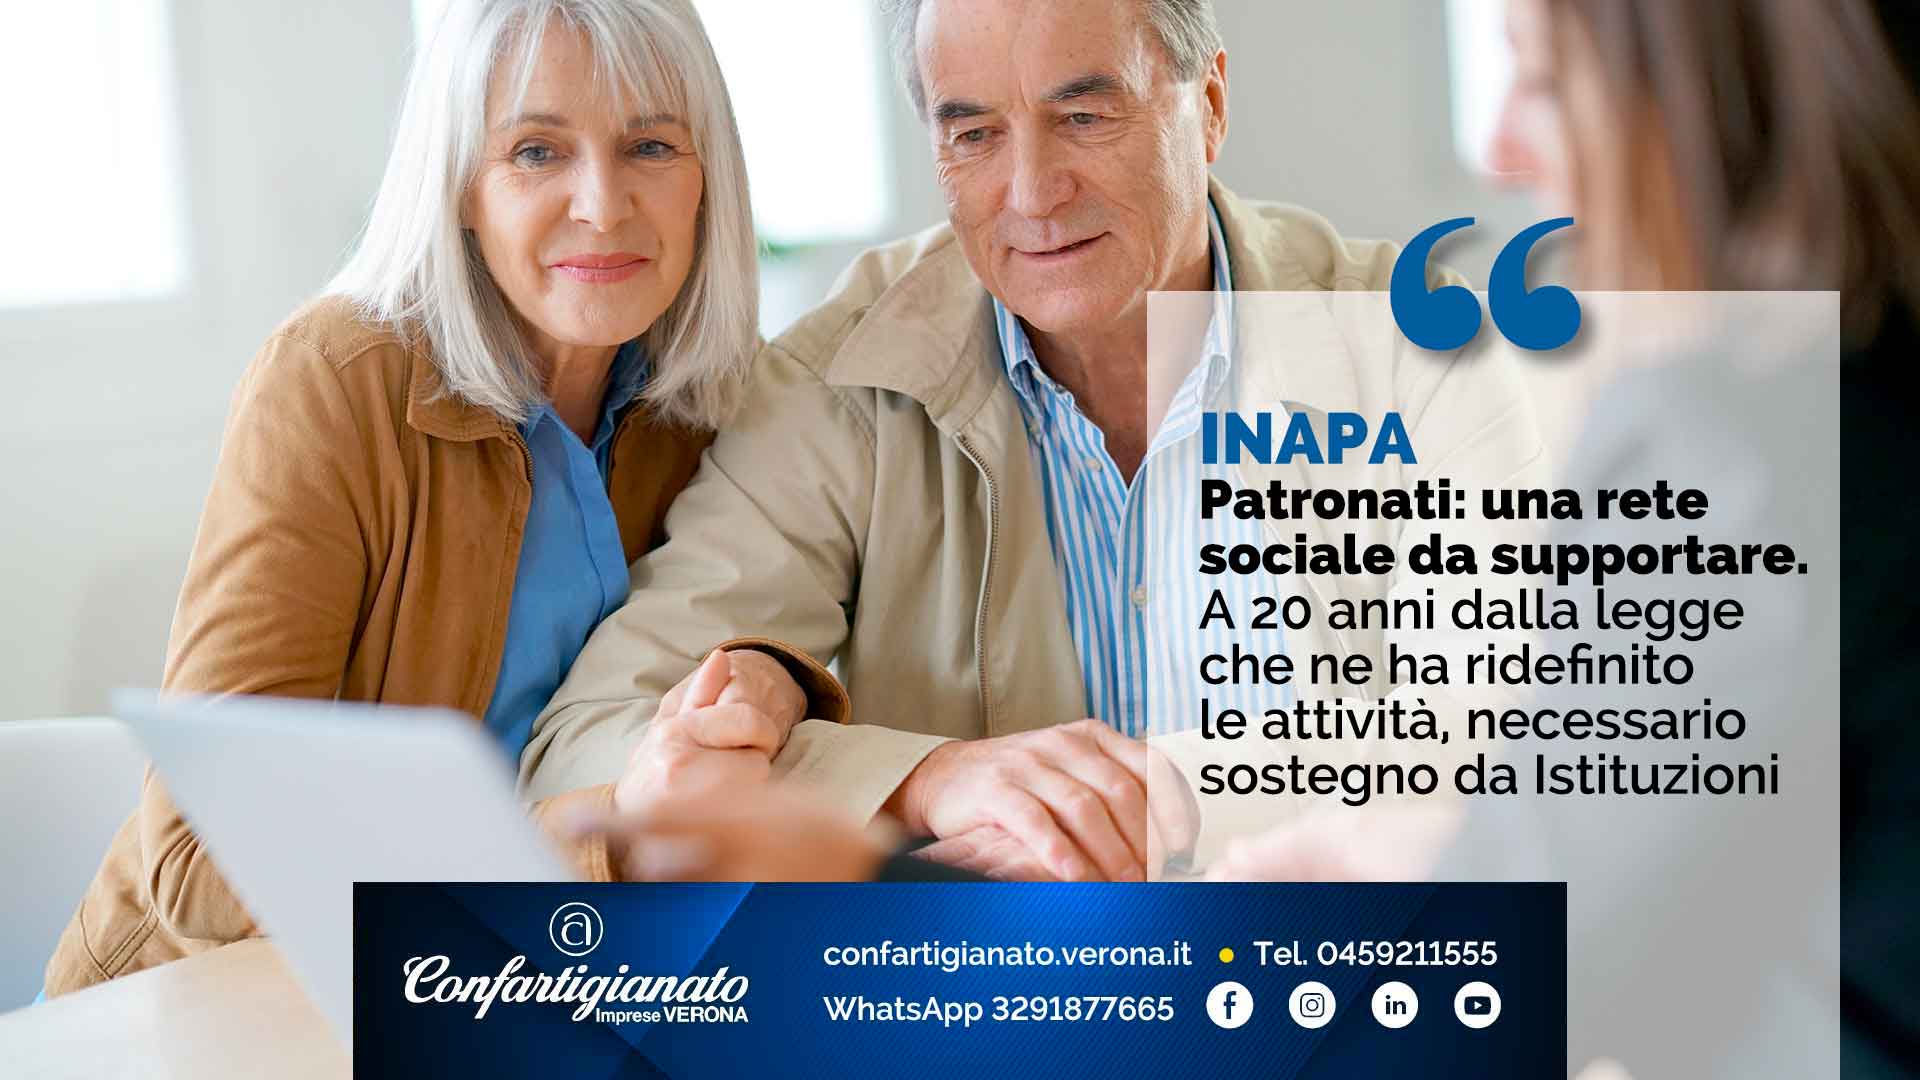 INAPA – Patronati: una rete sociale da supportare. A 20 anni dalla legge che ne ha ridefinito le attività, serve sostegno da Istituzioni